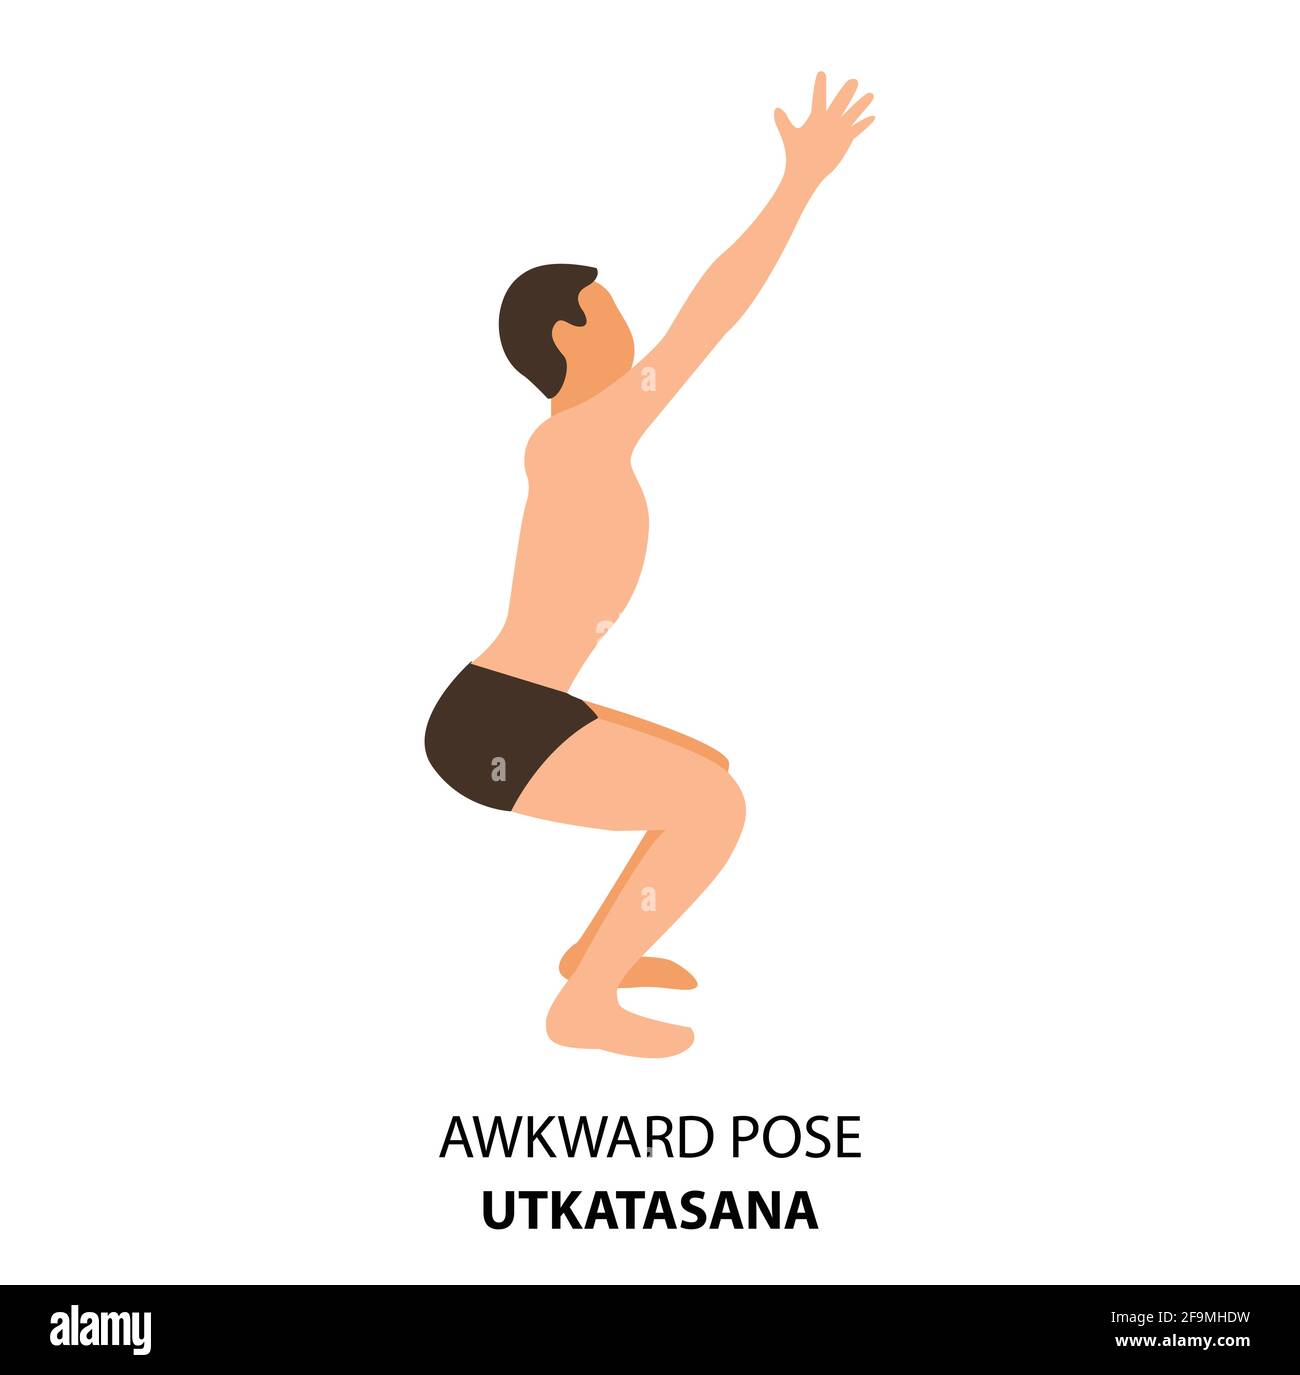 Awkward Pose (Utkatasana)